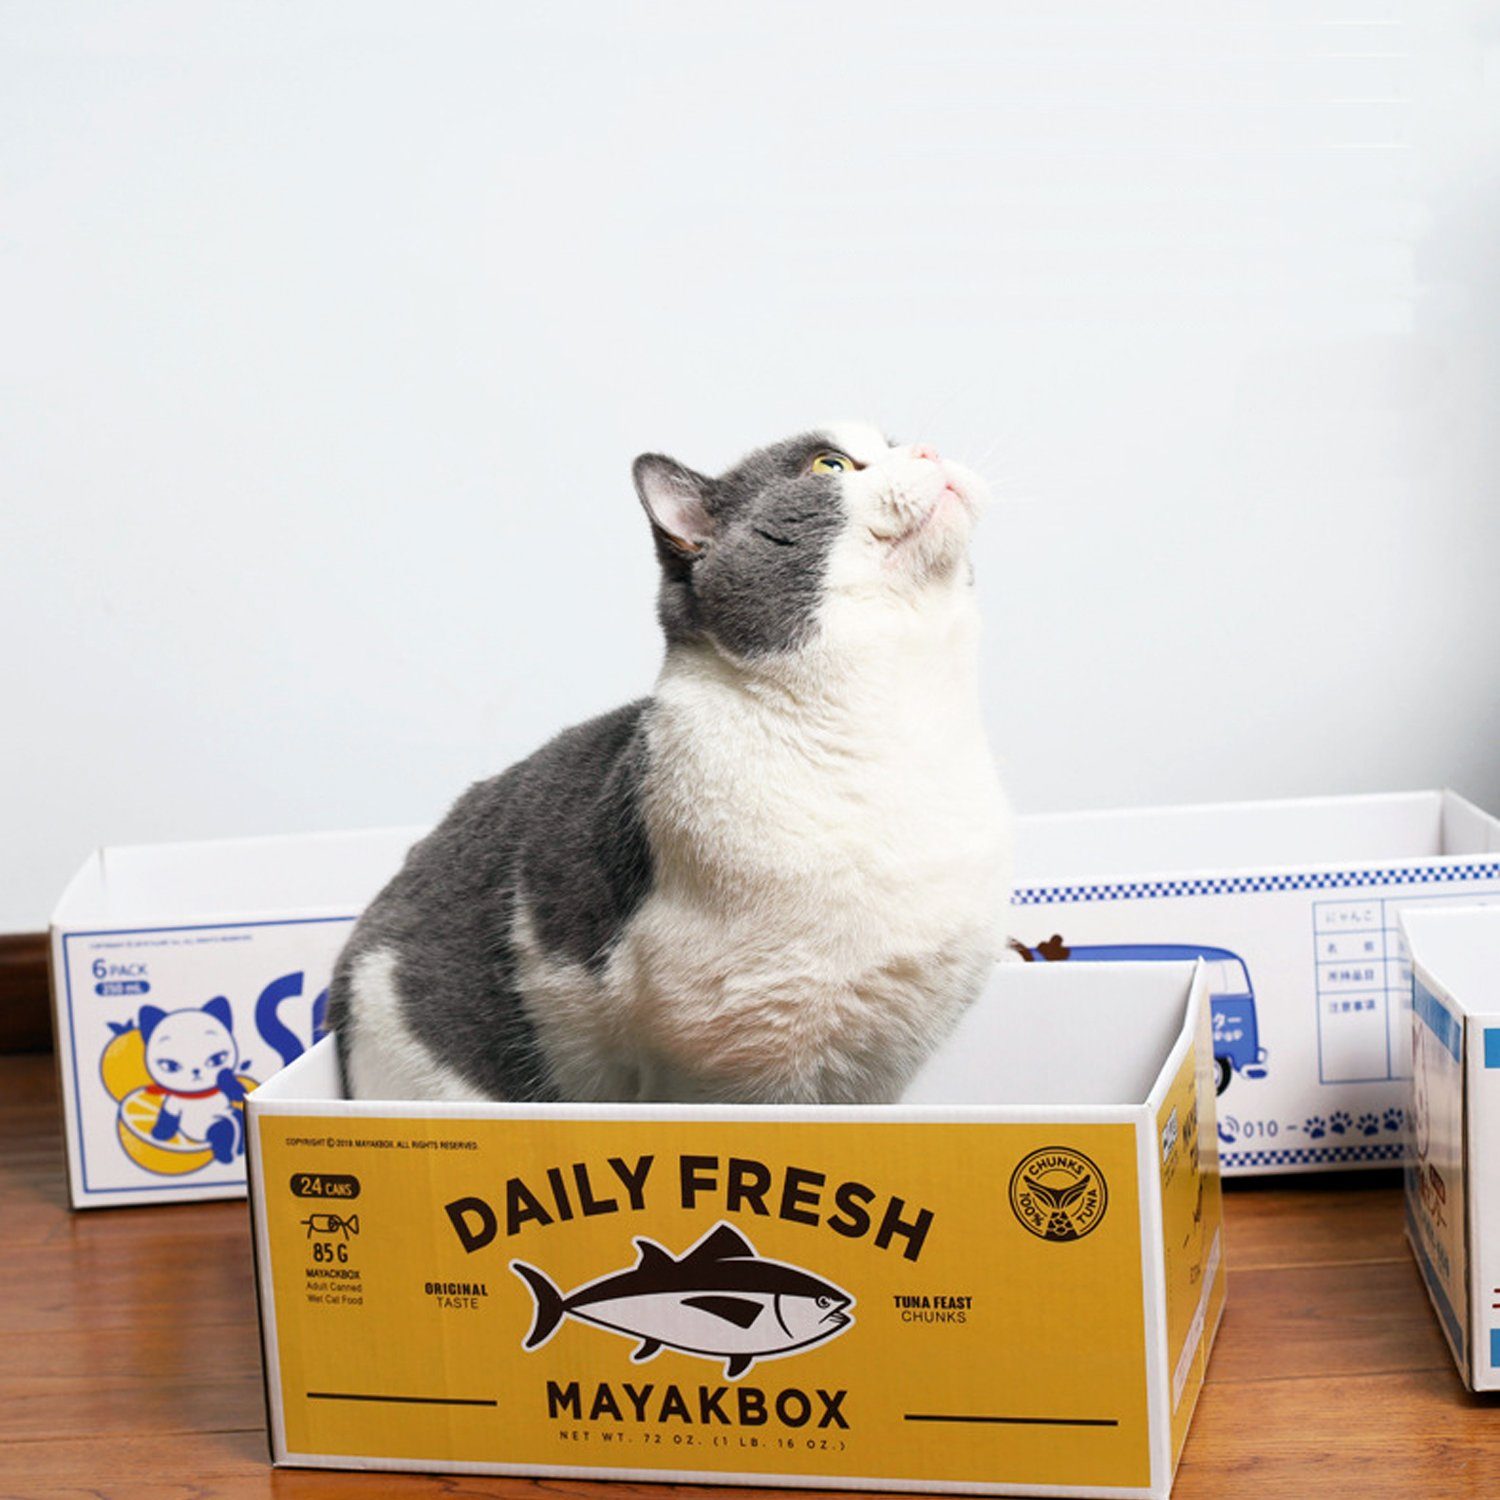 zggzerg Kratzbrett »Kratzpads für Katzen - Tragbare Katzenkratzbox mit  Katzenkratzbrett - Robuste doppelseitige kratzpappe für Katzen Lochdesign«  online kaufen | OTTO